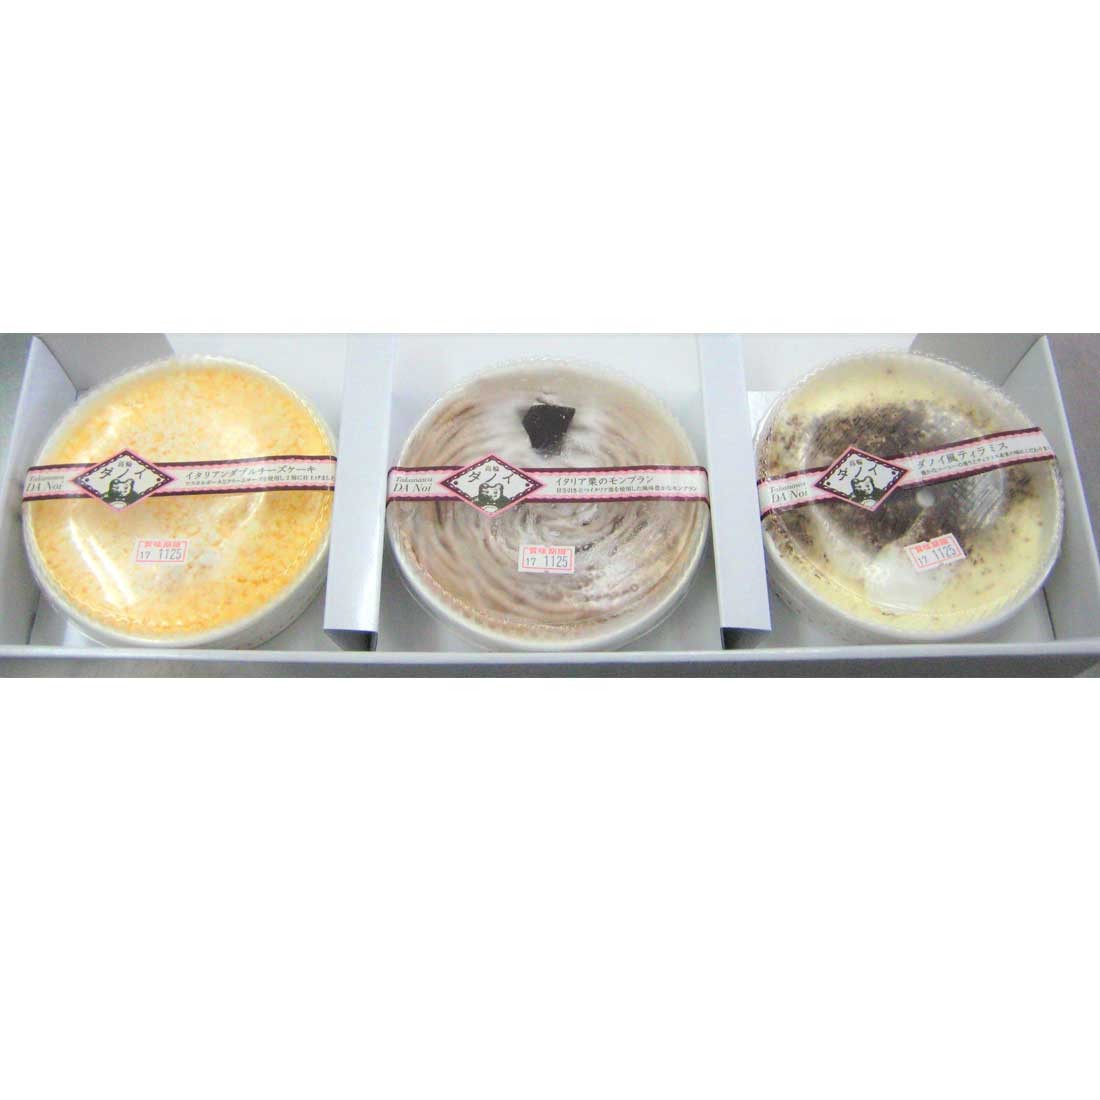 送料無料 ダノイ レストランのケーキセット 約12cm 3種類3個入 チーズケーキ ダノイ風ティラミス モンブラン 代引不可 夏のひんやりスイーツ Danoi 01 Regaloセレクトギフト 通販 Yahoo ショッピング